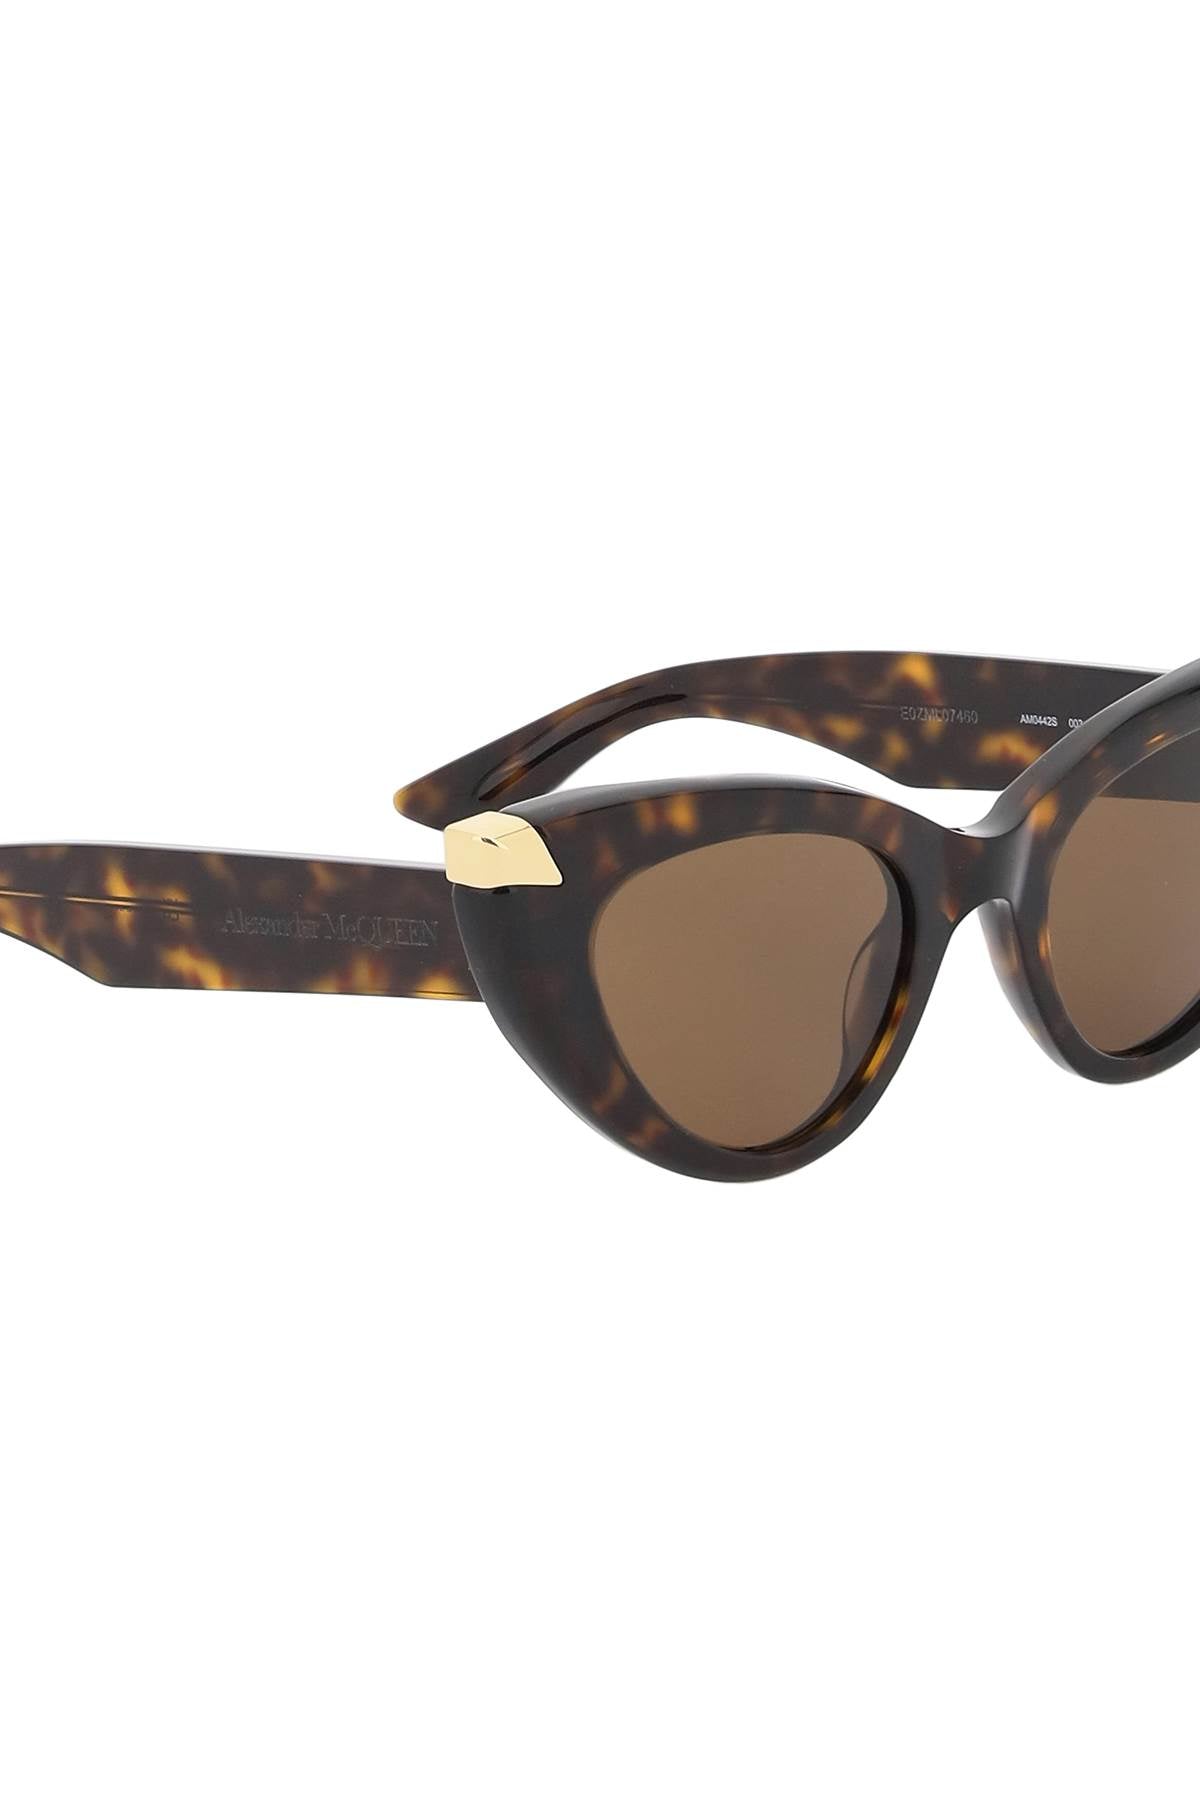 Alexander mcqueen punk rivet cat-eye sunglasses for-2